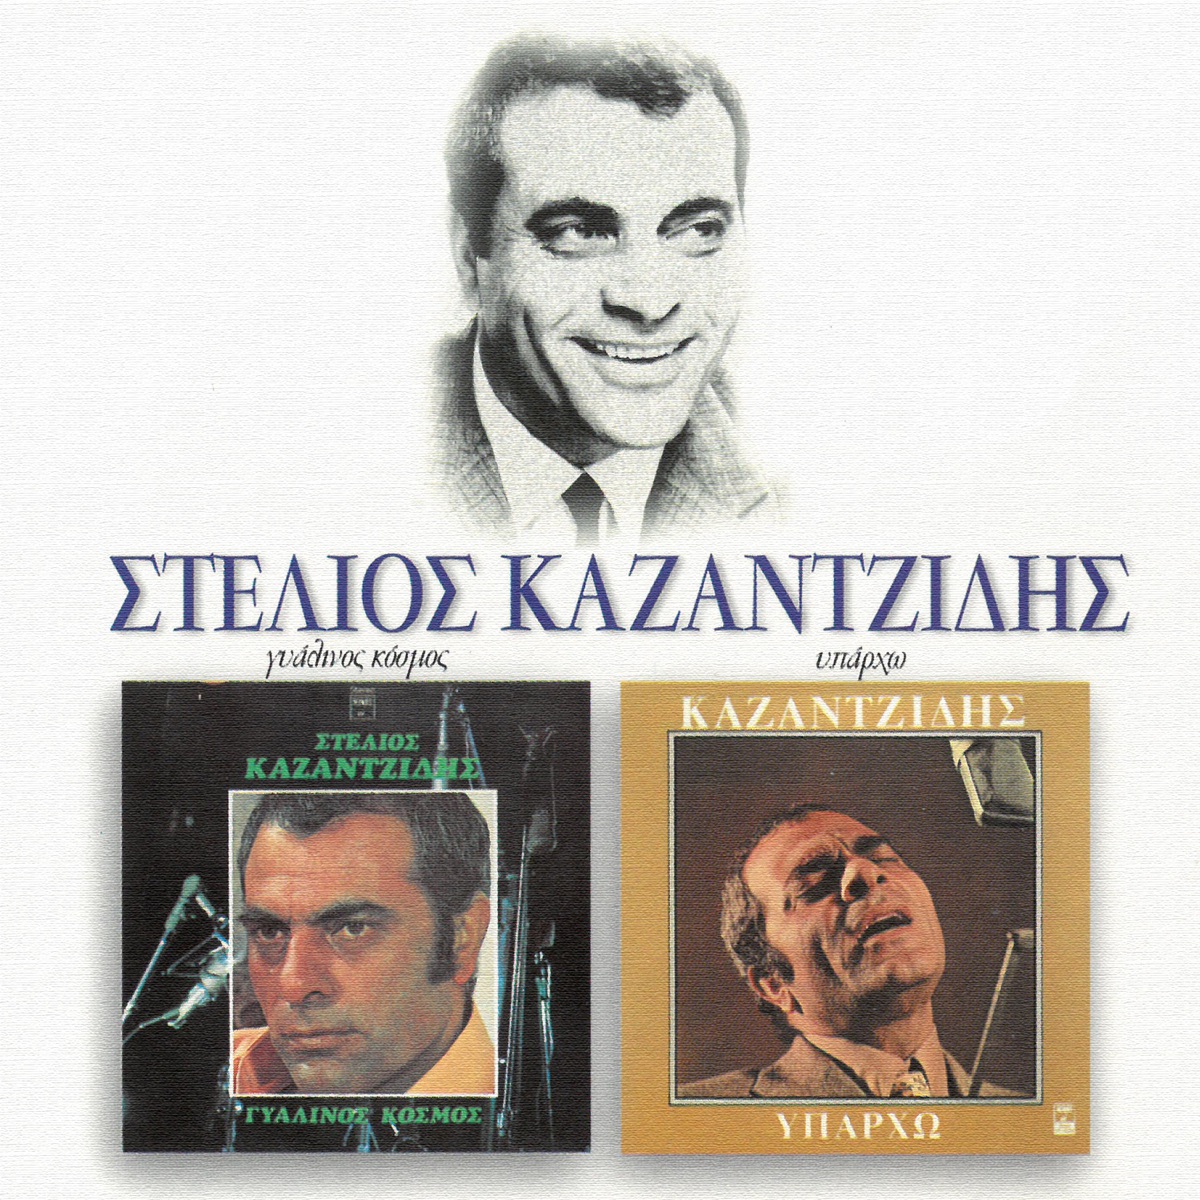 Iparho - Gialinos Kosmos - Album by Stelios Kazantzides - Apple Music